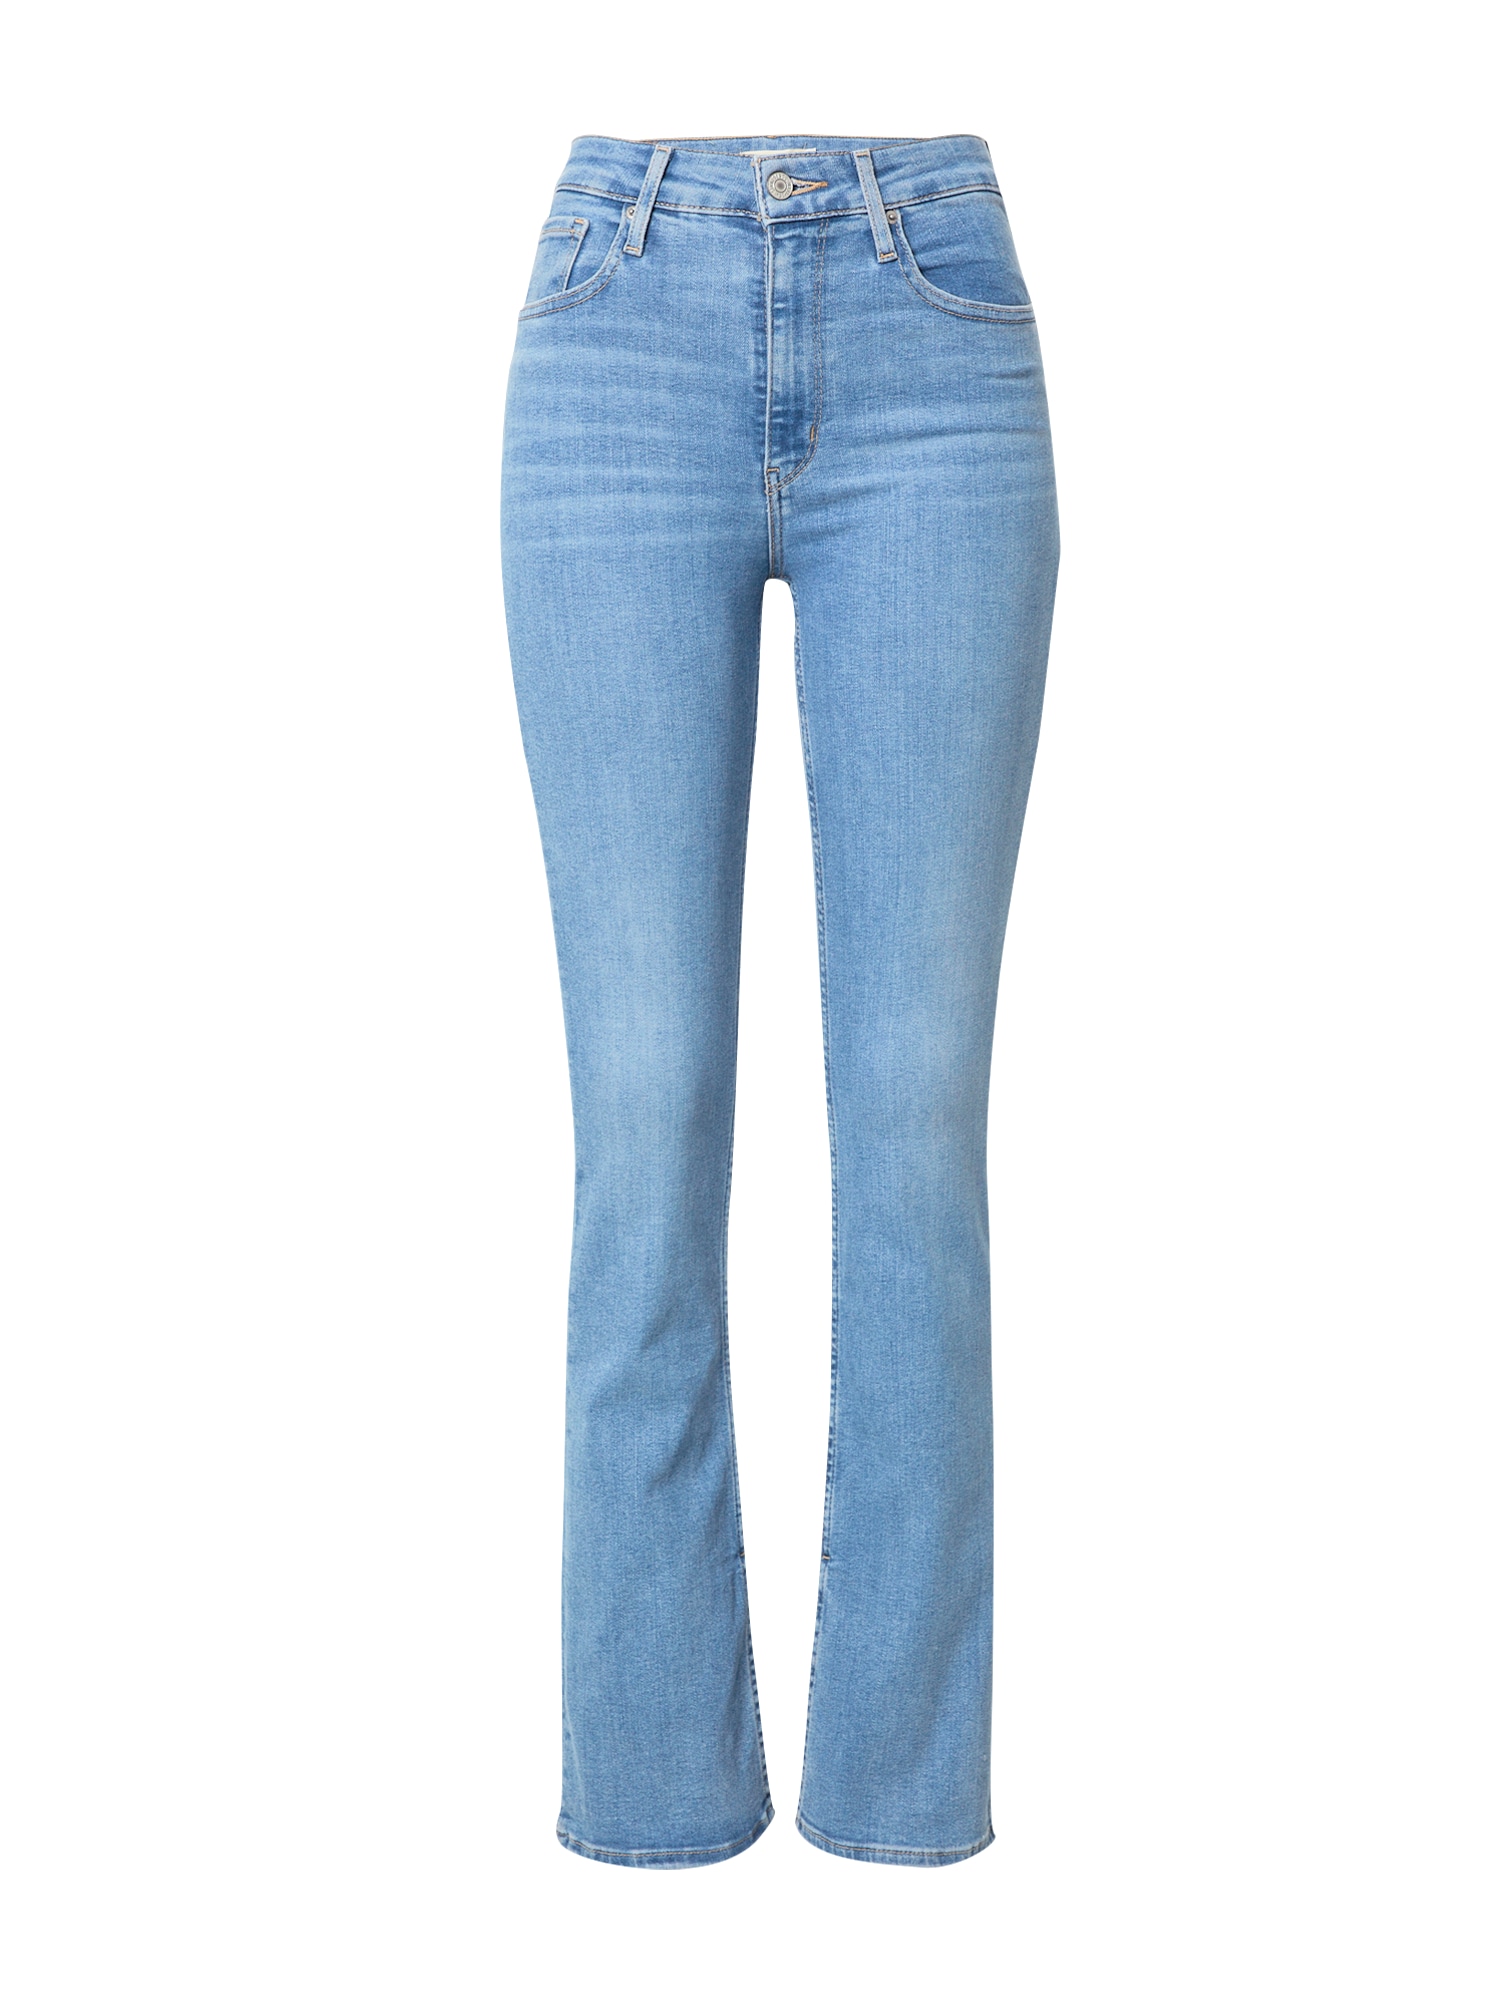 Jeans '725 HR SLIT BOOTCUT' von Levis